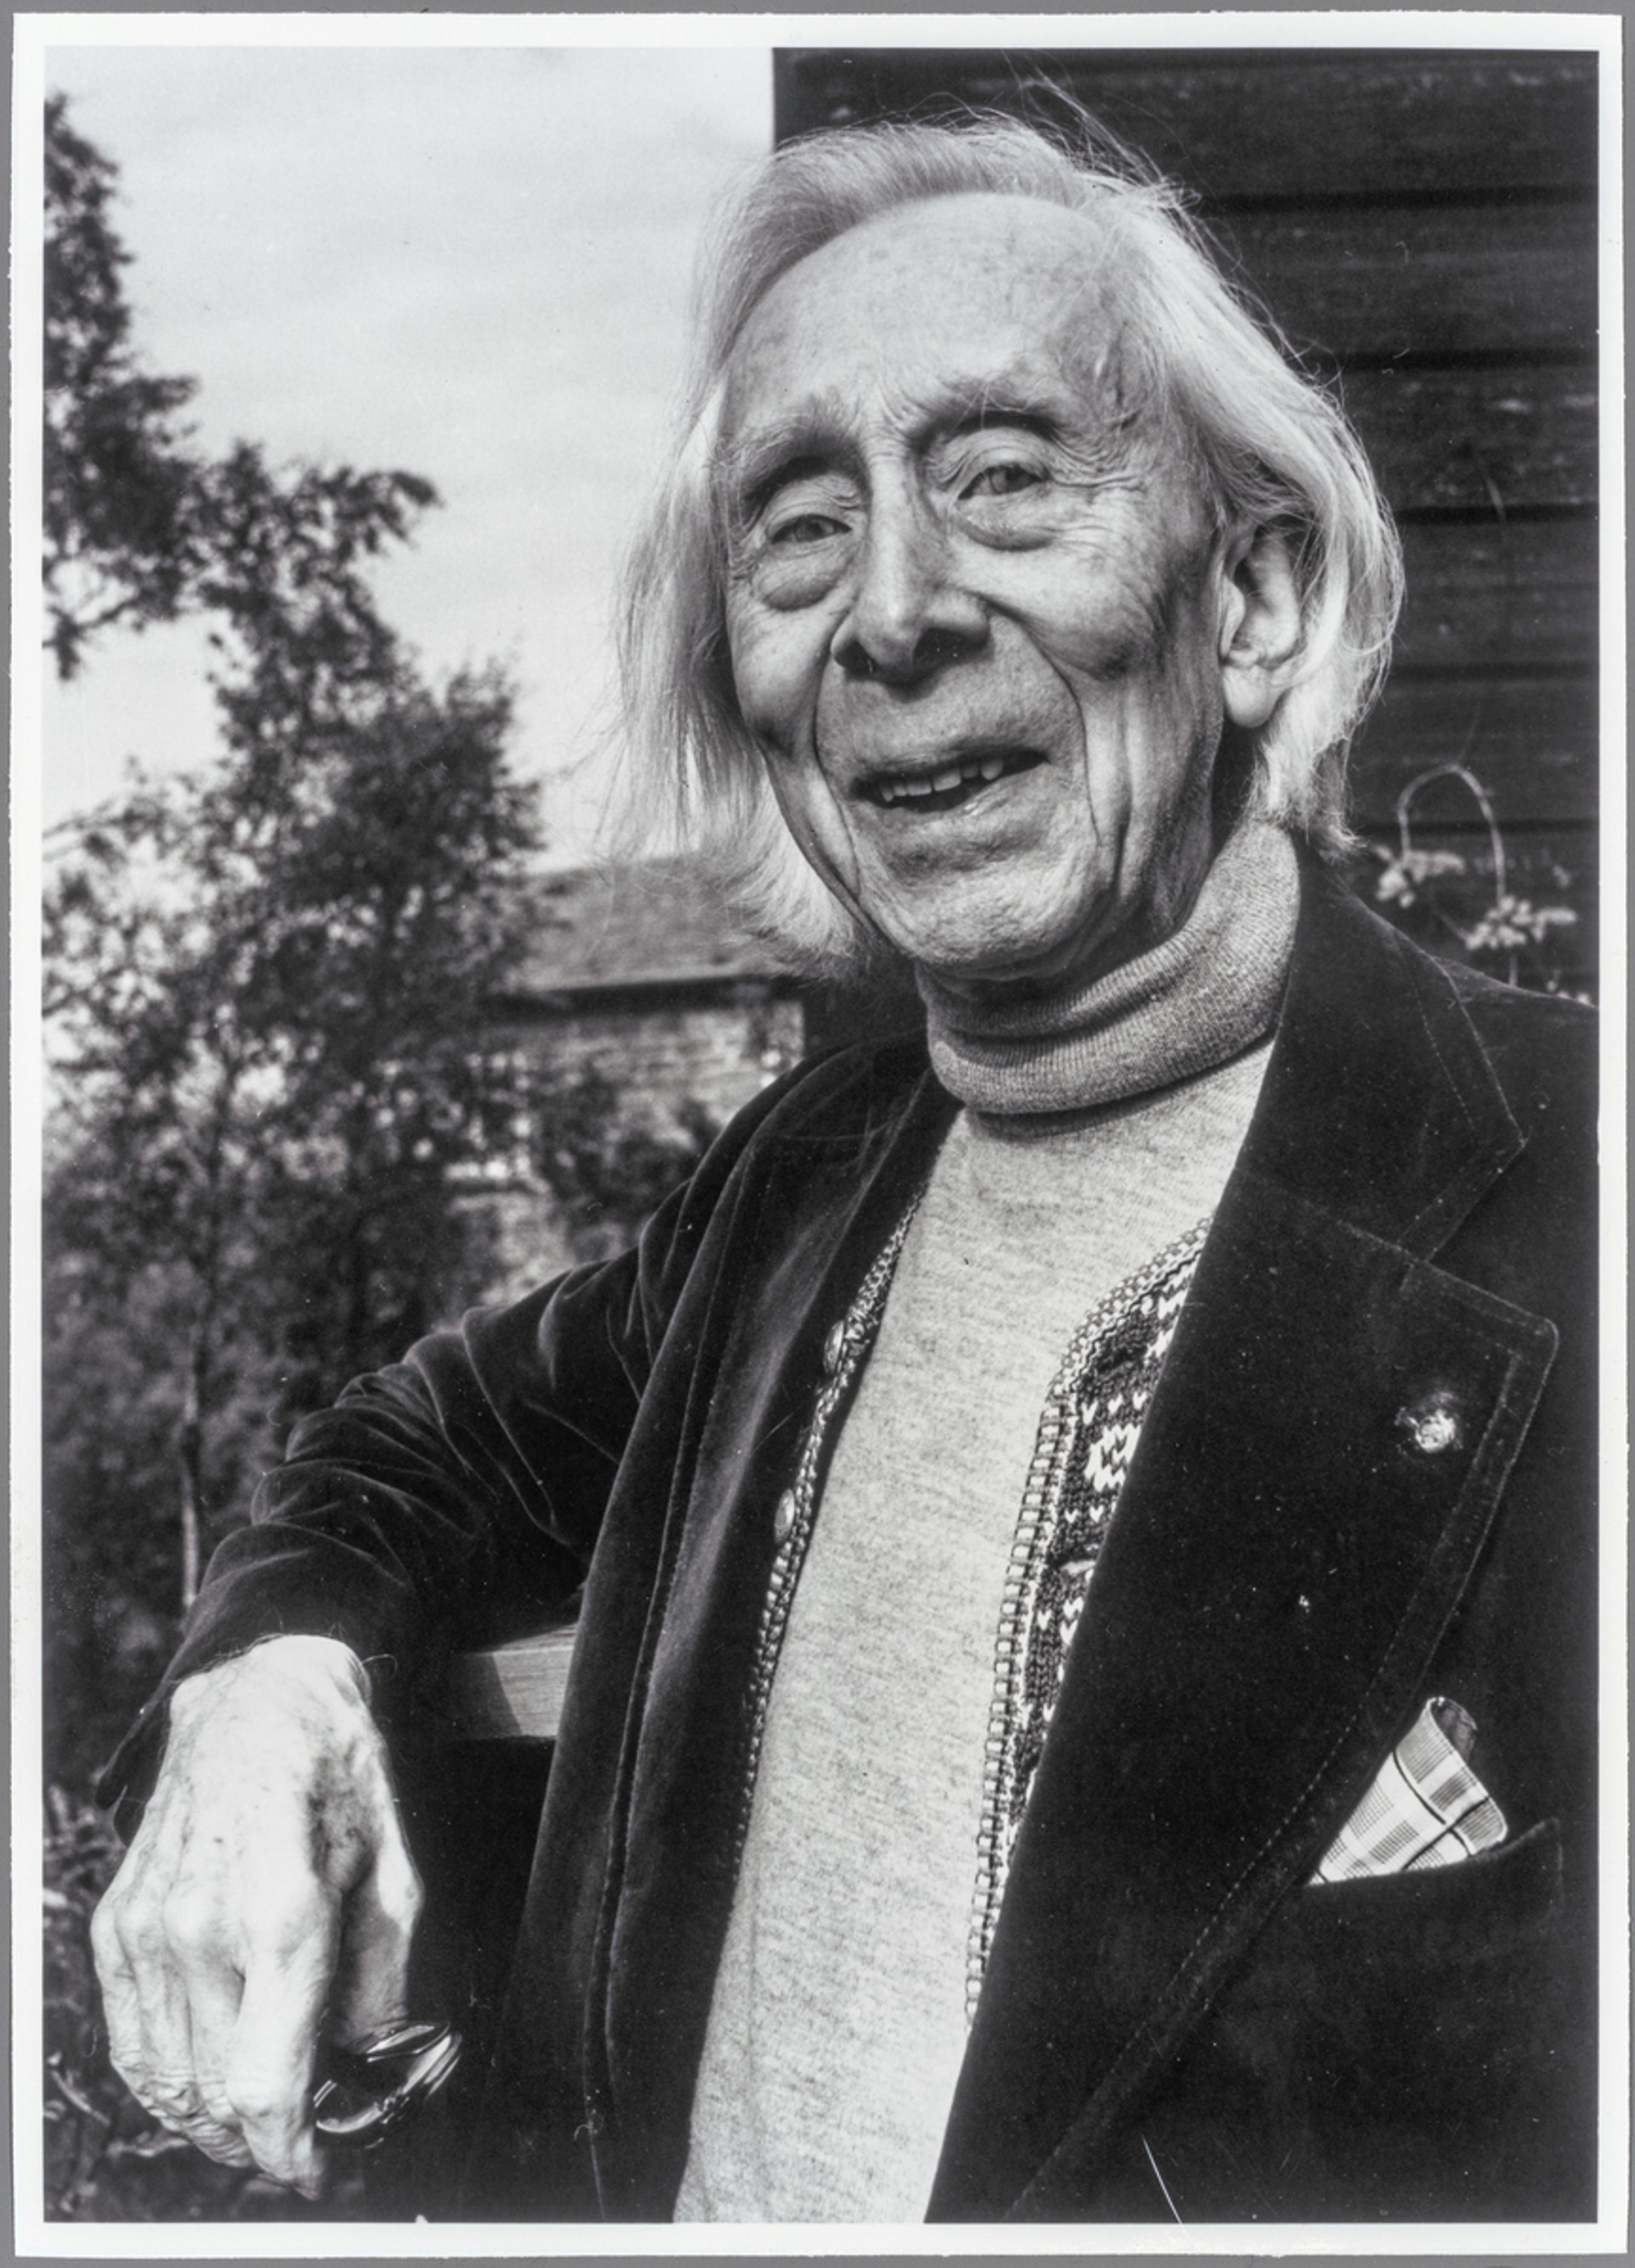 Portrett av Harald Sæverud i sort-hvitt. Han lener seg mot et rekkverk og smiler mot kamera.